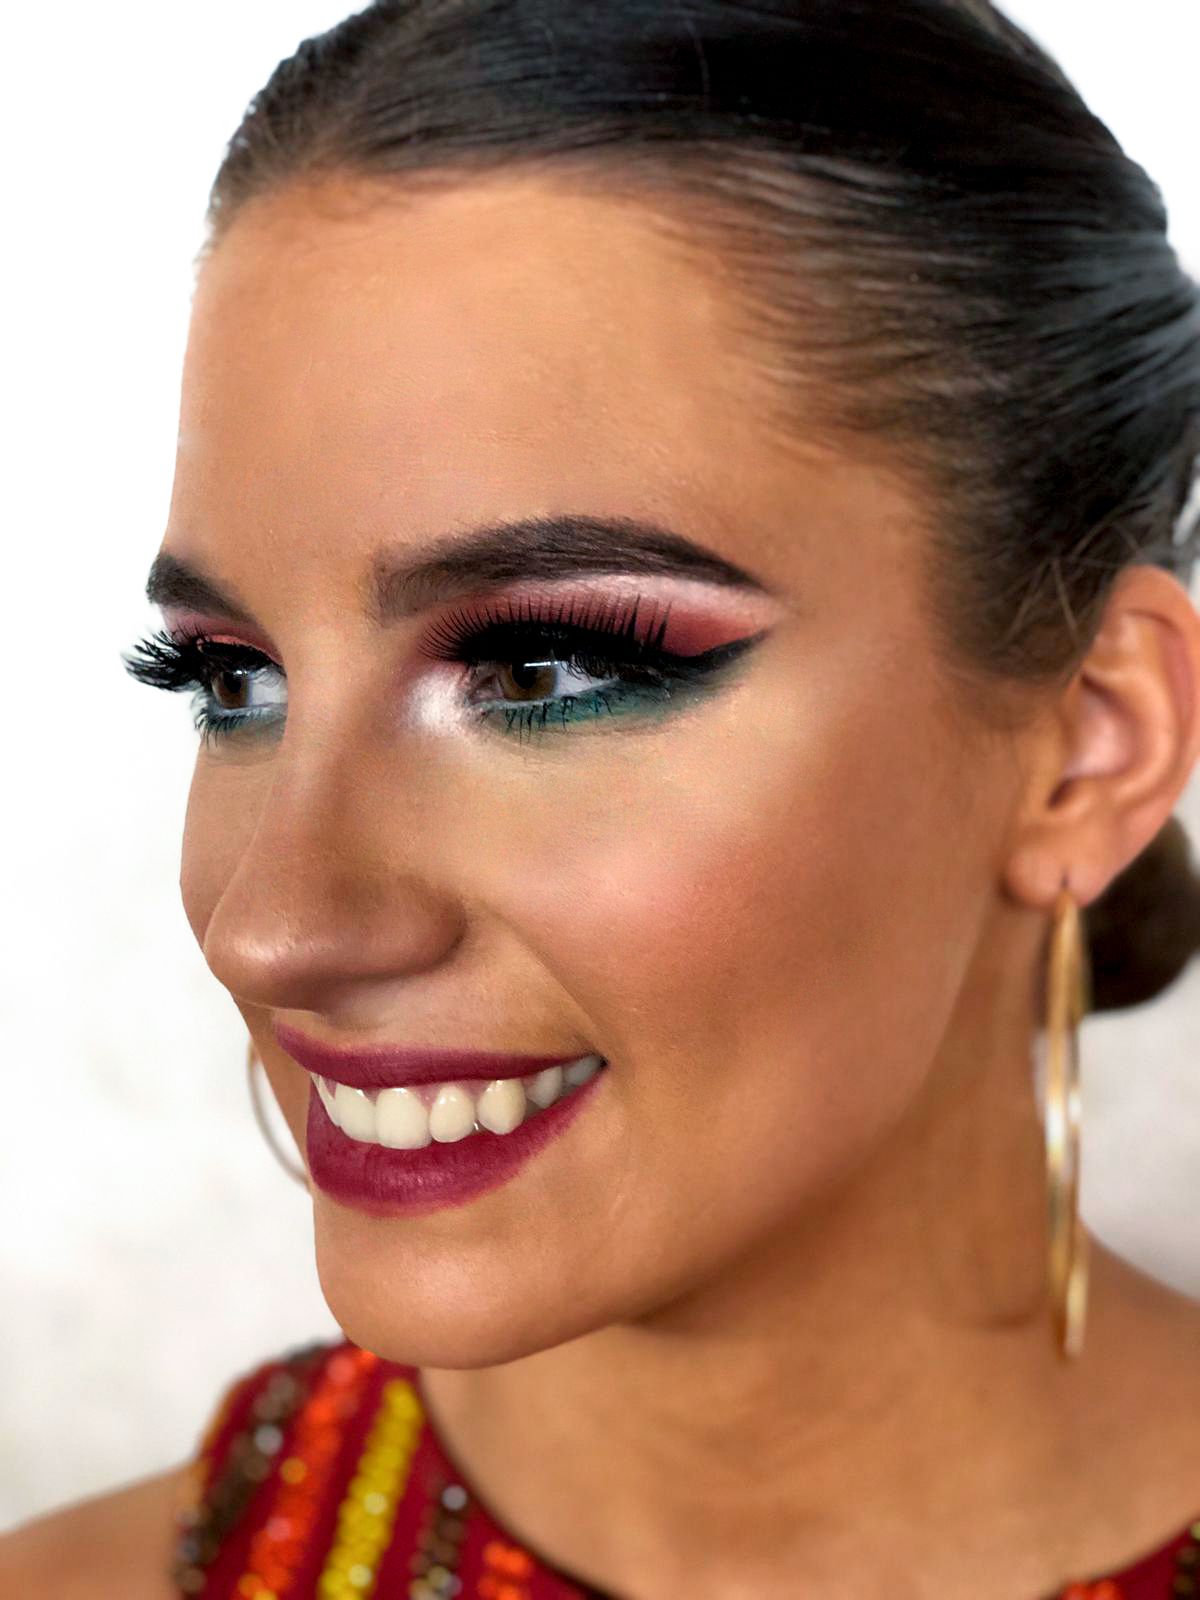 Leonor Aguiar- Makeup artist - Maia - Maquilhagem para Eventos